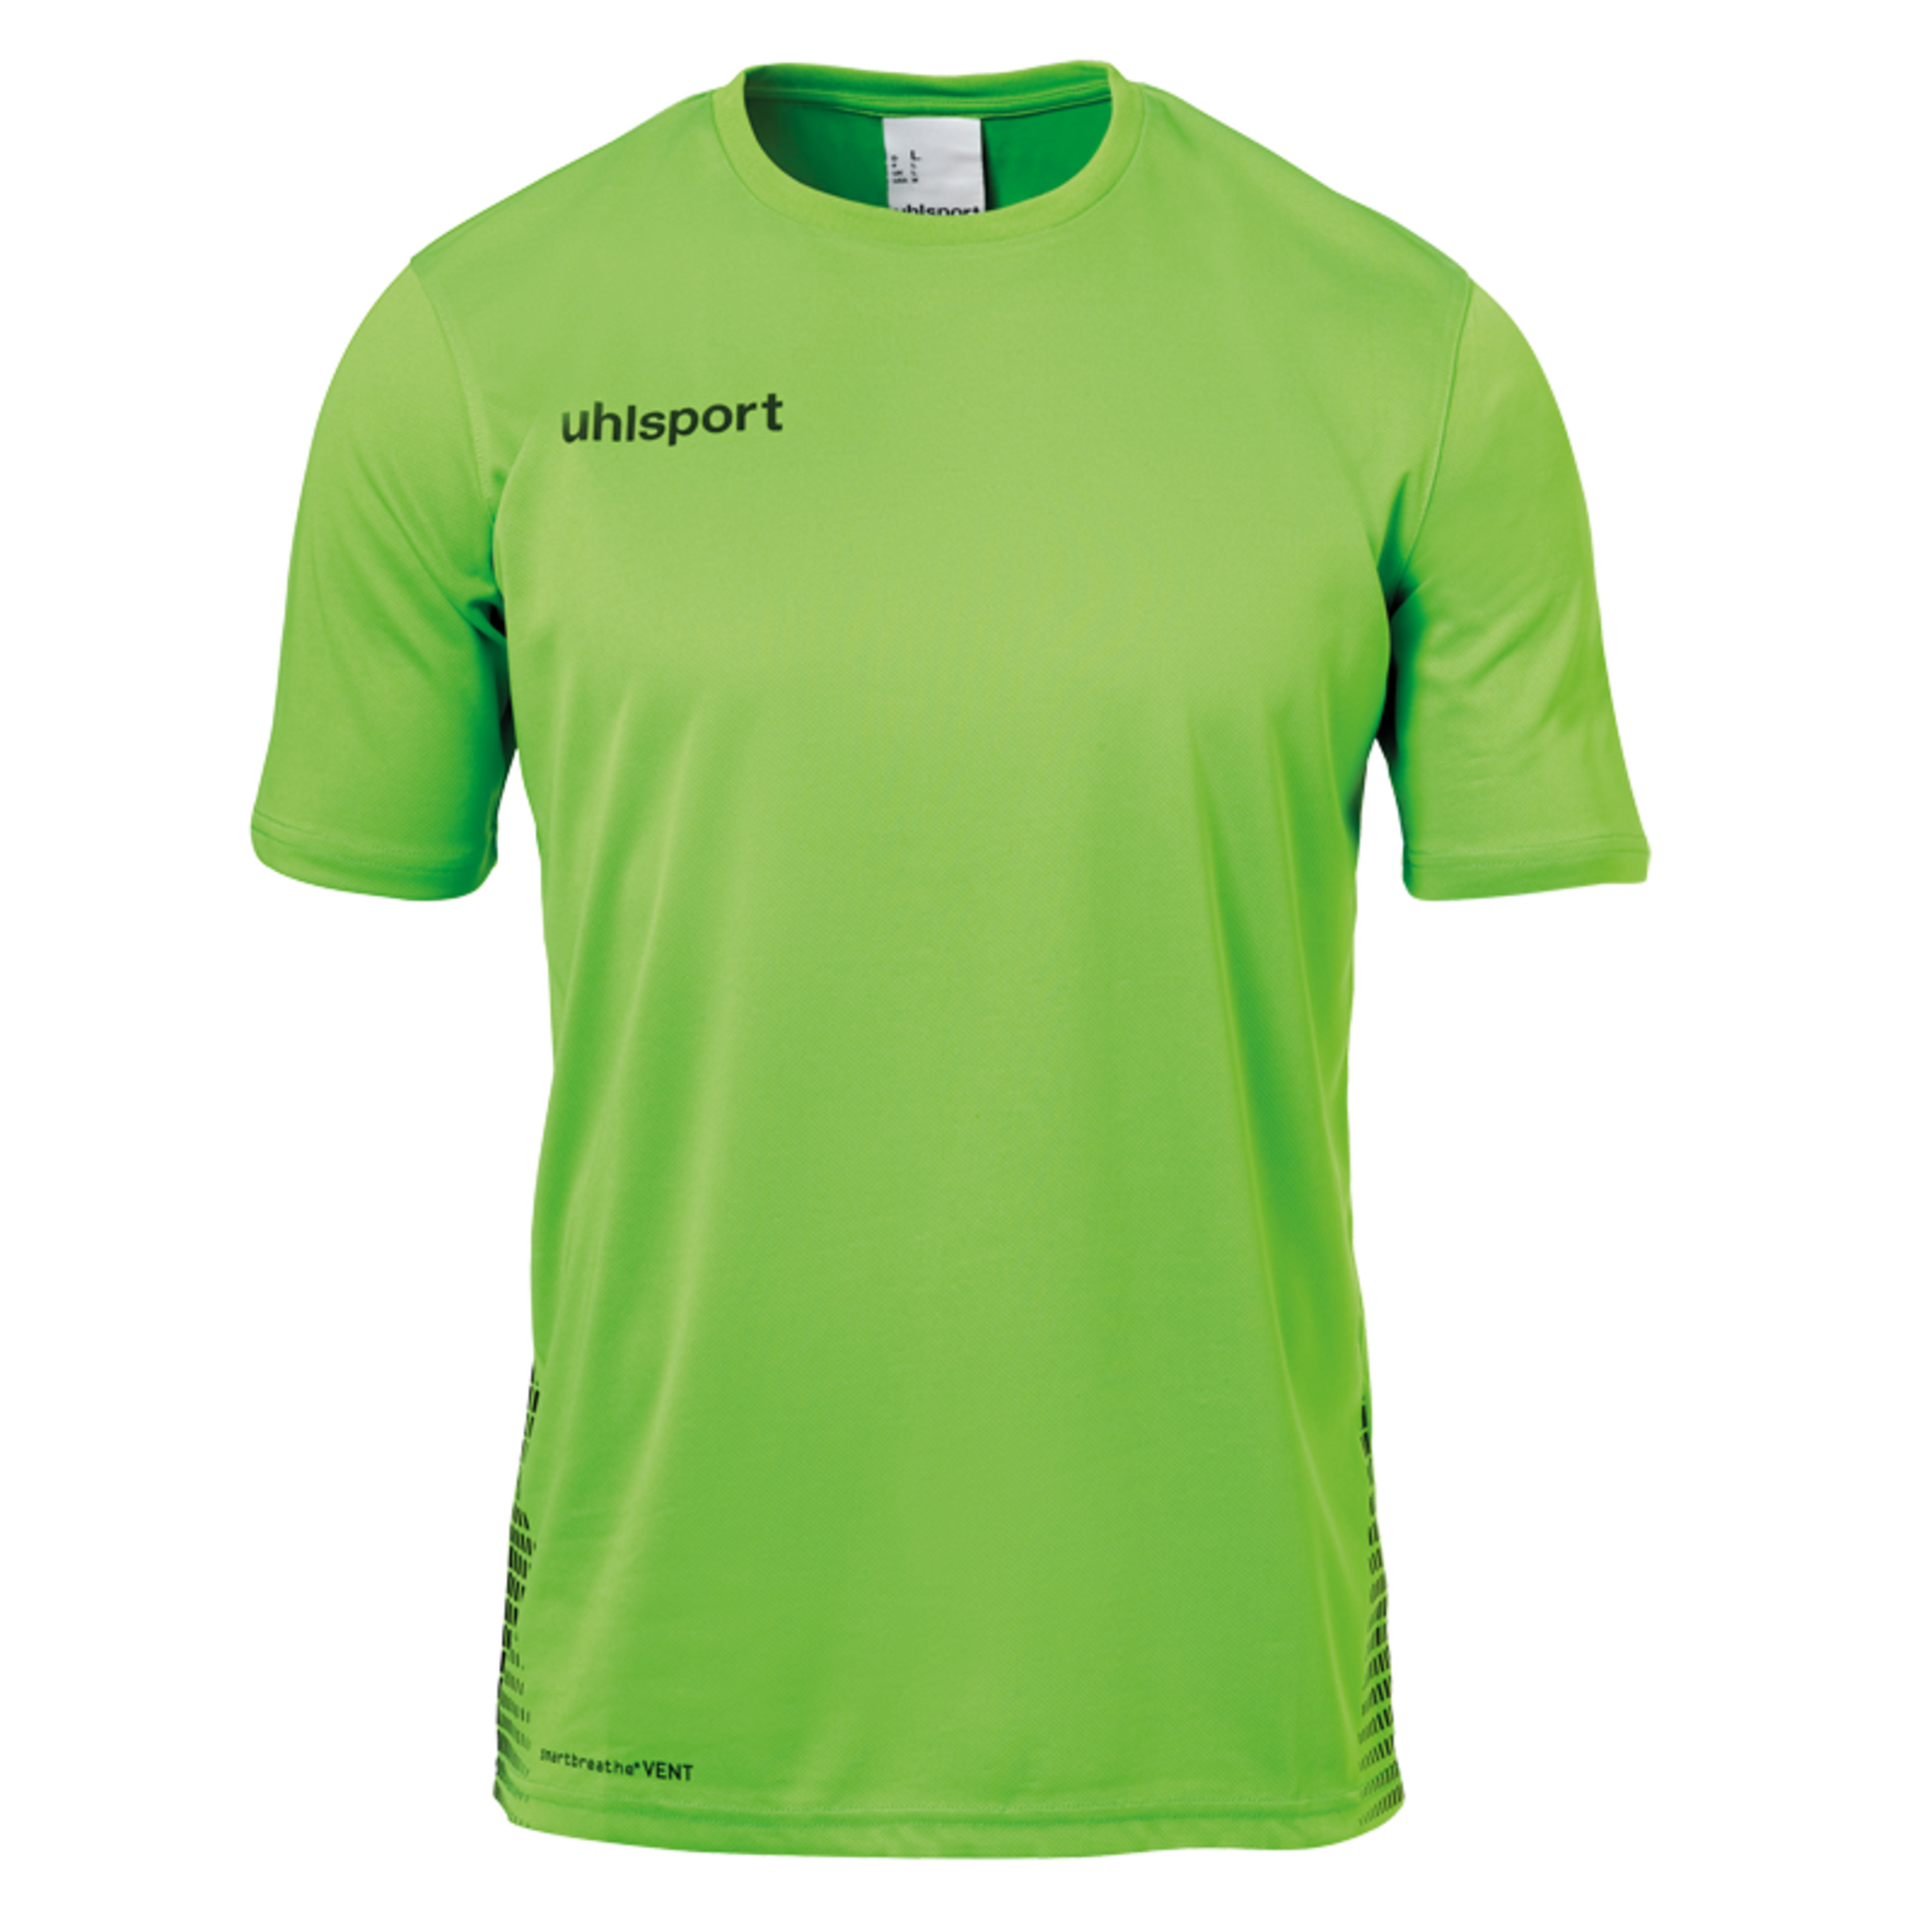 Score Training T-shirt Verde Fluor/negro Uhlsport - negro-verde - 